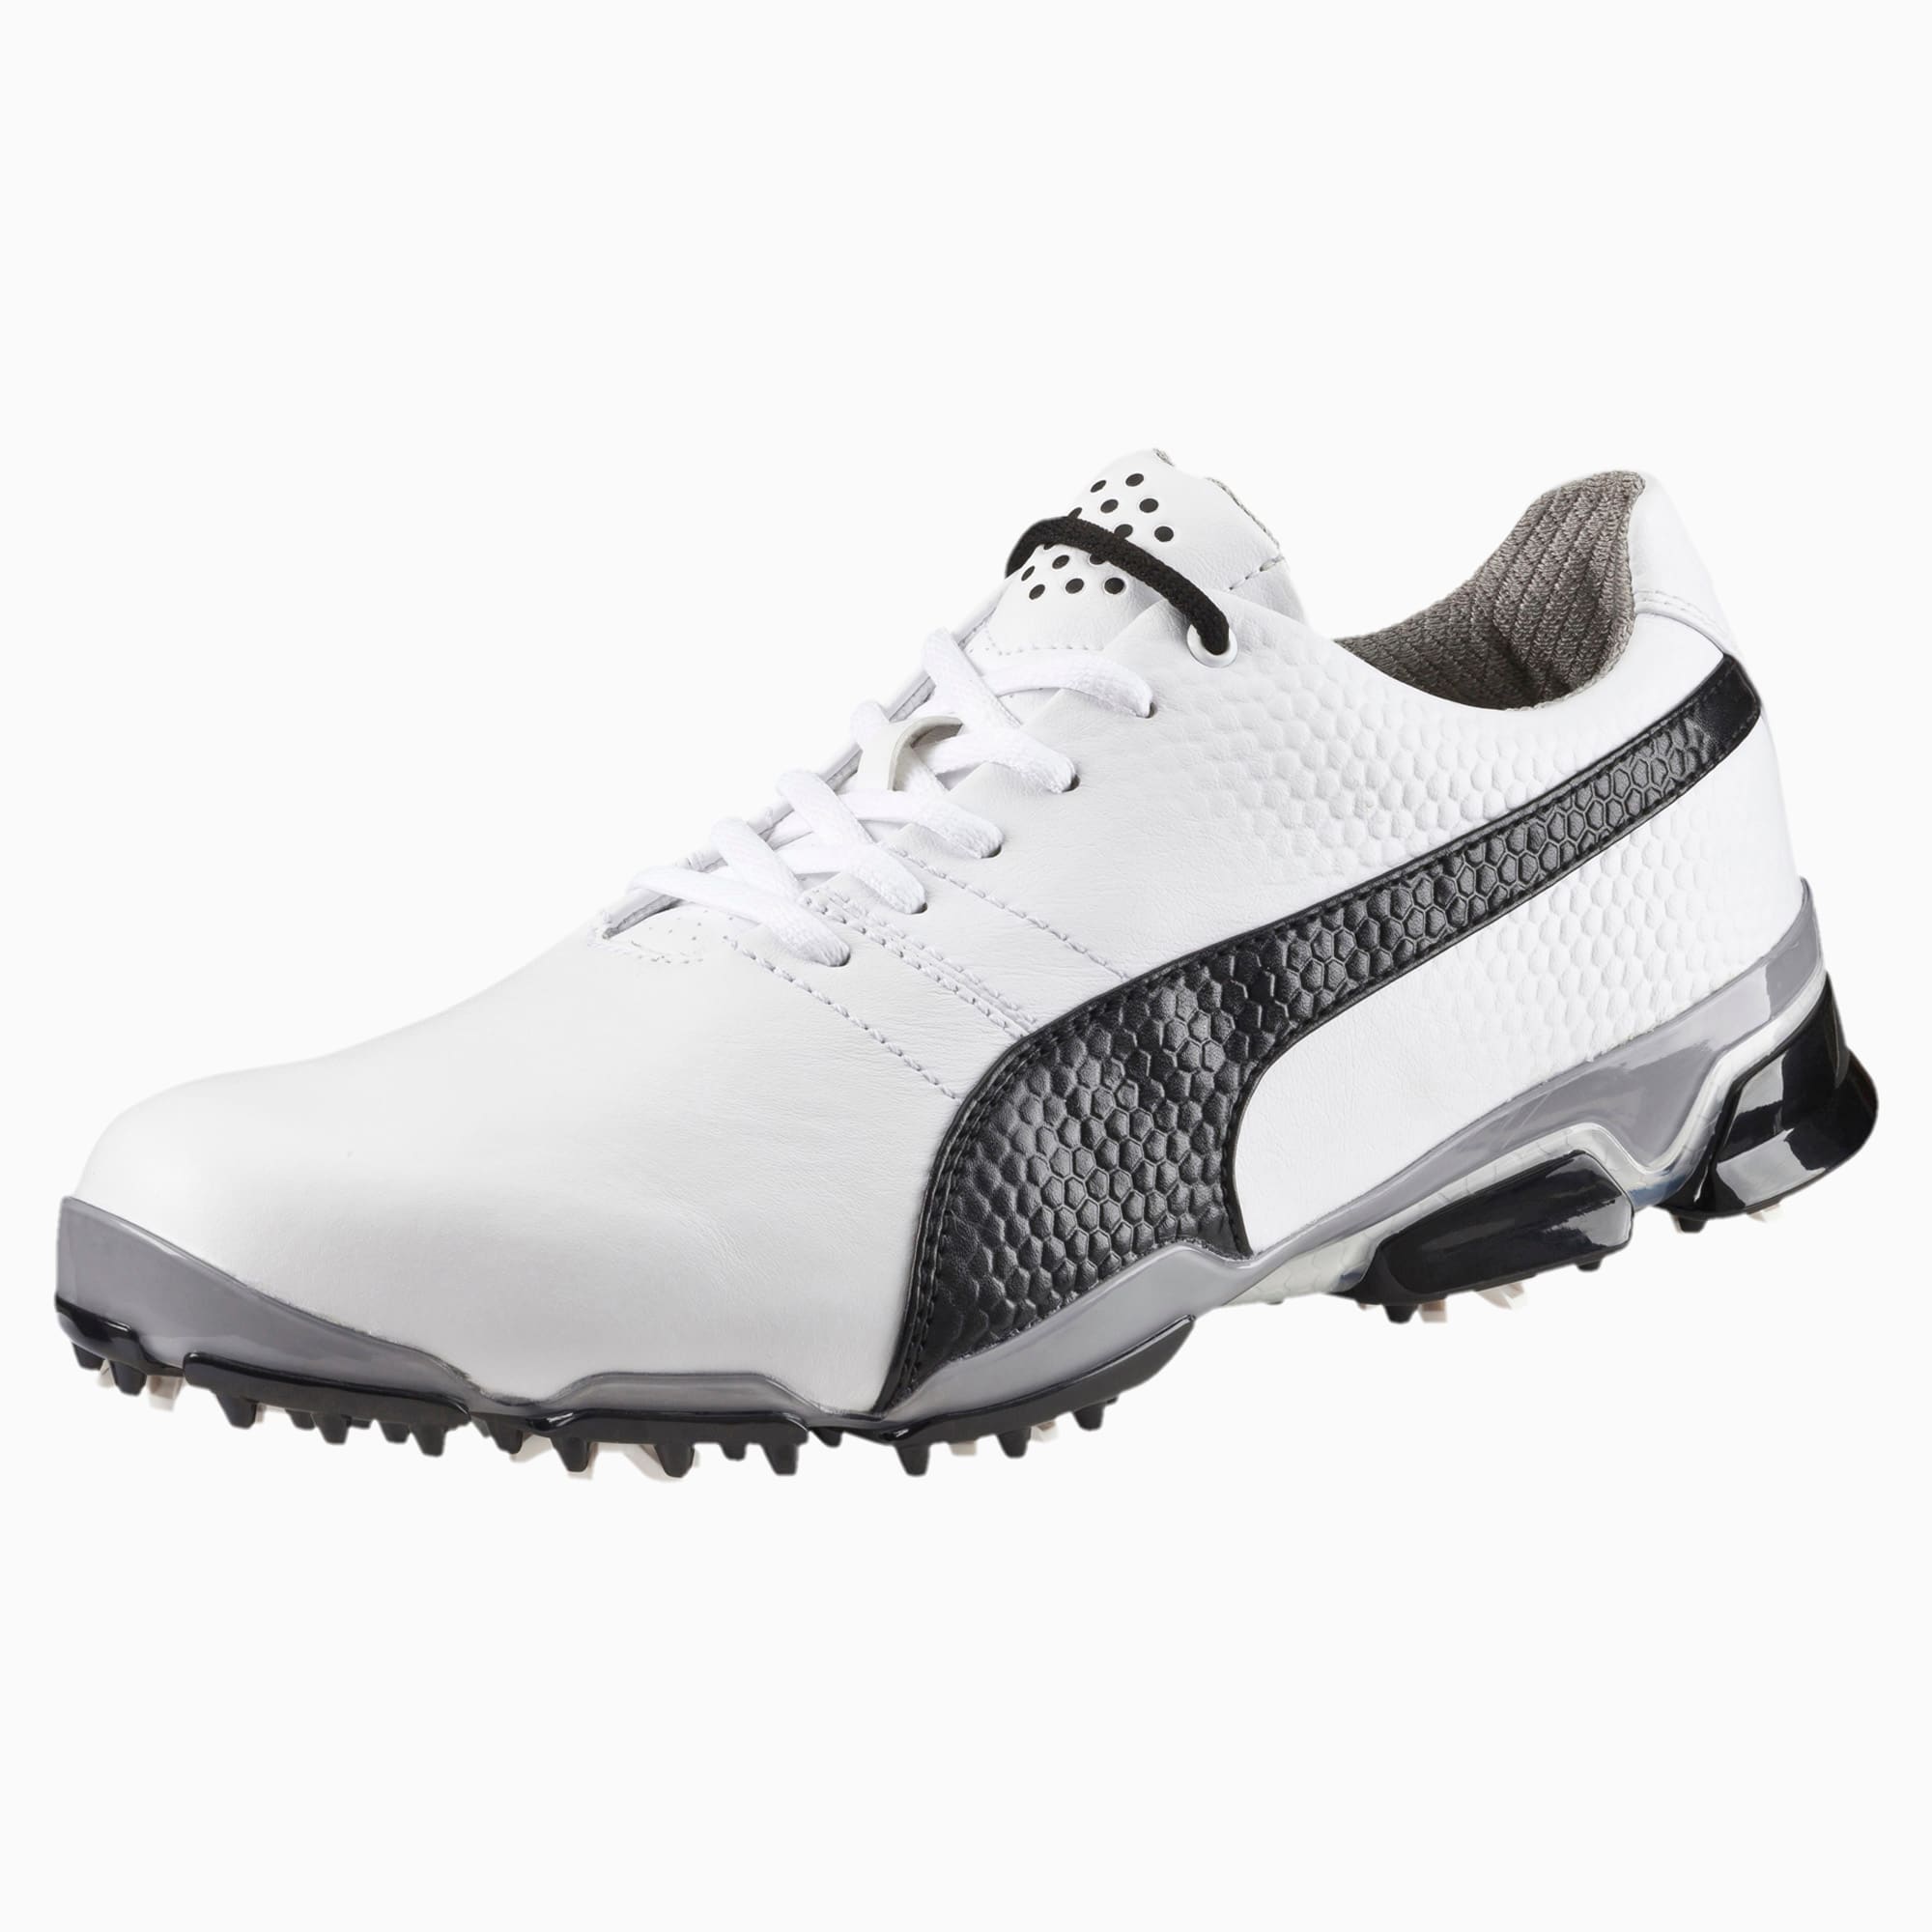 TITANTOUR IGNITE Men's Golf Shoes | PUMA US